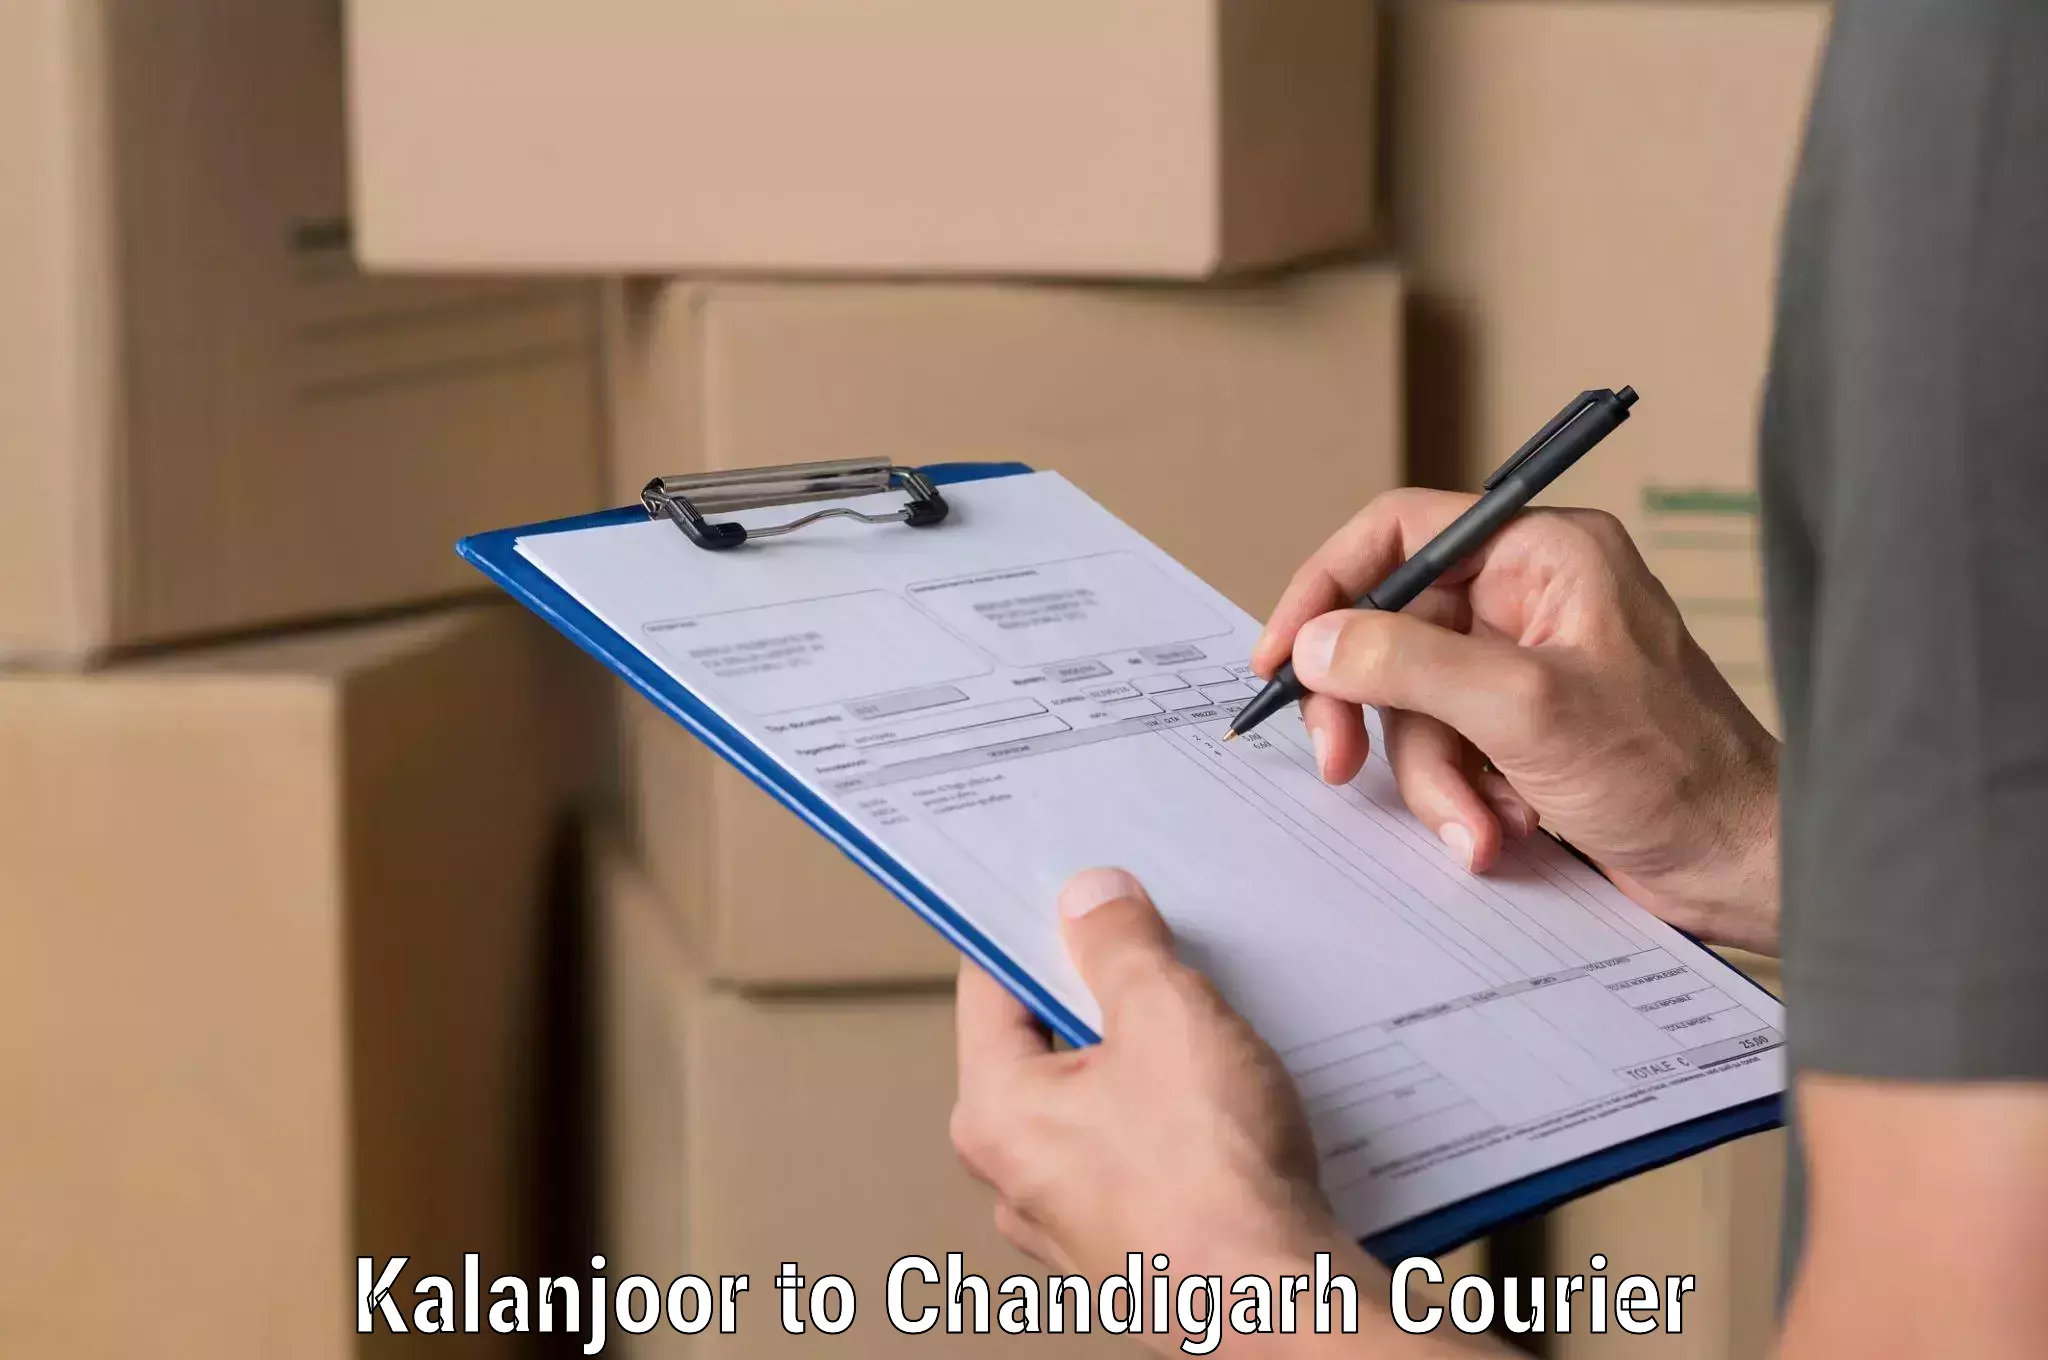 Smart shipping technology Kalanjoor to Panjab University Chandigarh